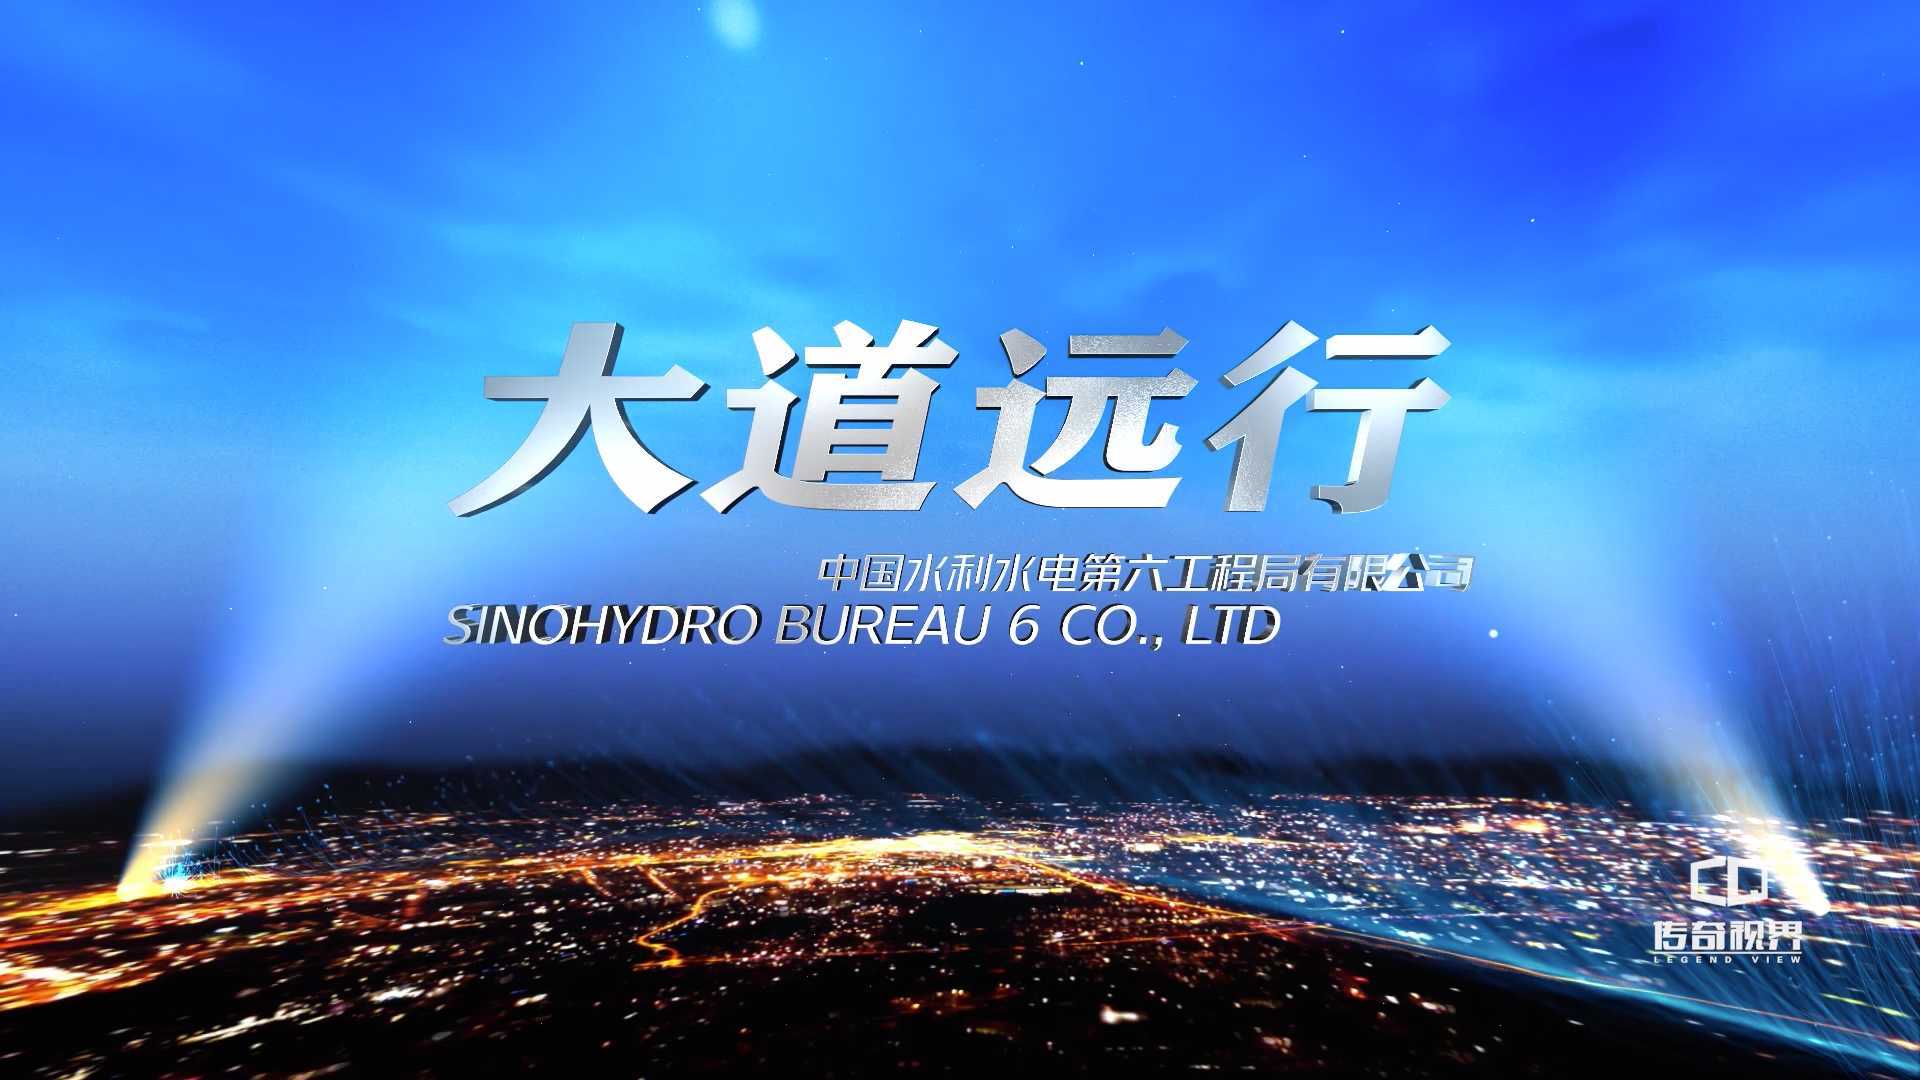 《大道远行》中国水利水电第六工程局有限公司宣传片——传奇视界出品